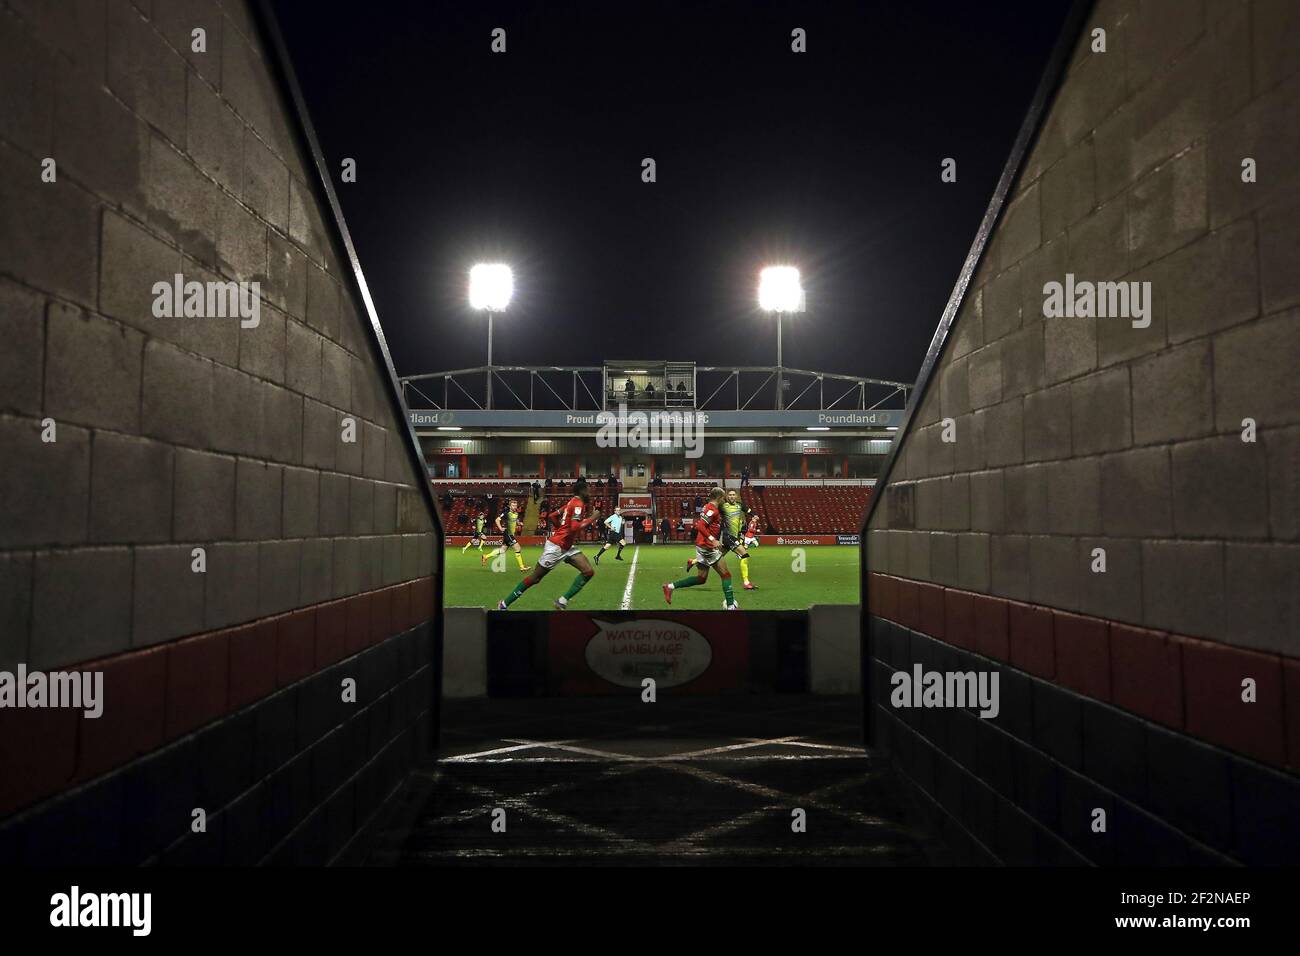 Vista generale dell'azione dall'interno di uno stadio vuoto durante la partita Sky Bet League Two al Banks's Stadium, Walsall. Data immagine: Venerdì 12 marzo 2021. Foto Stock